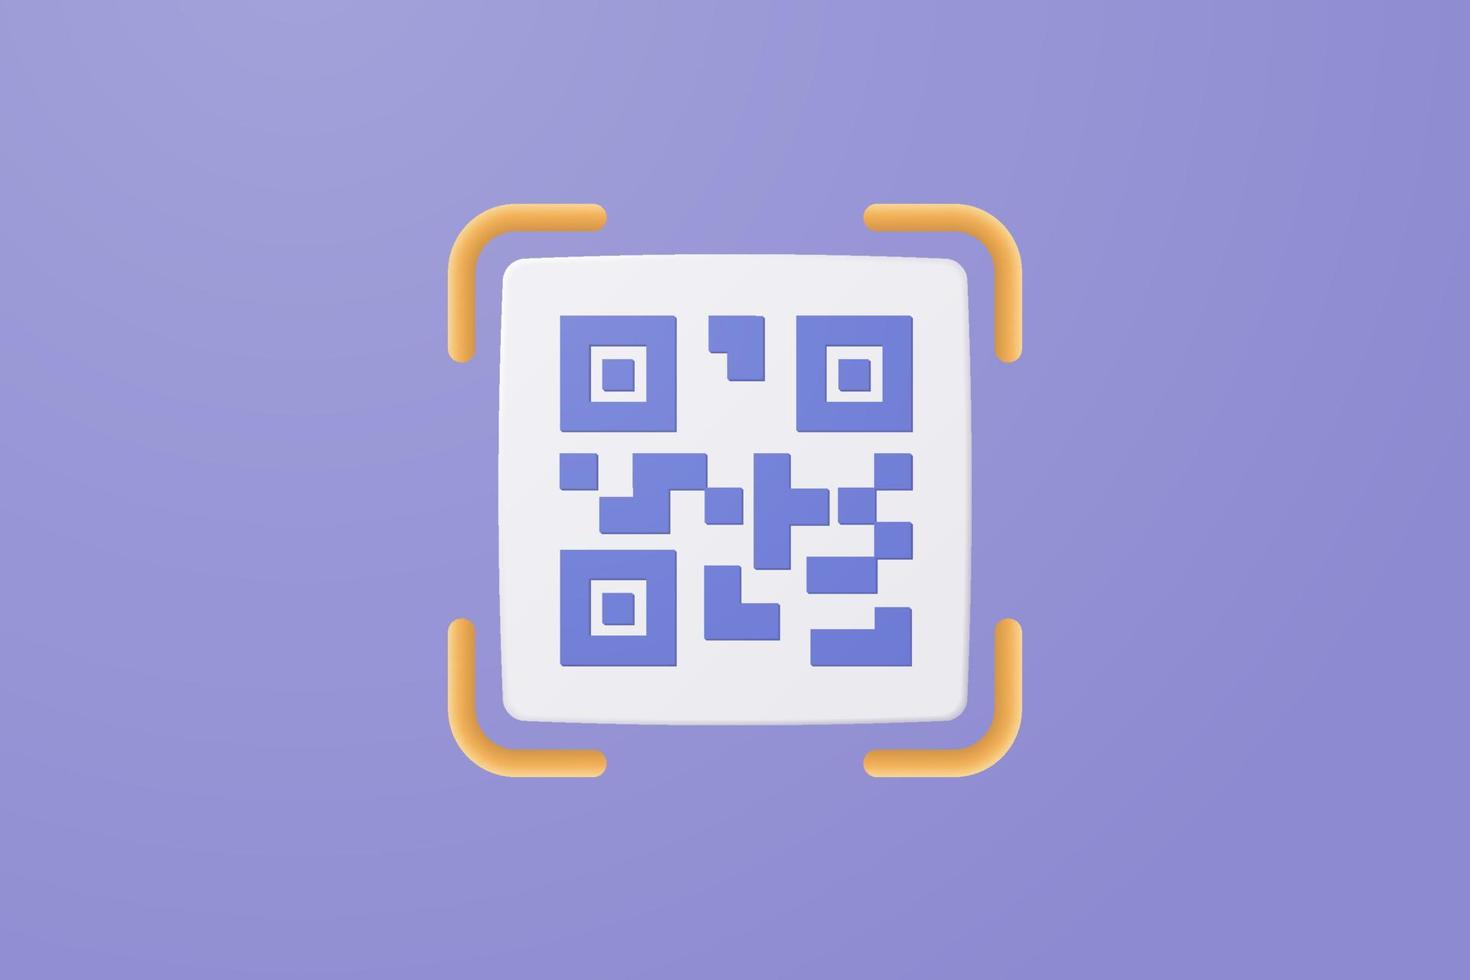 Escaneo de código qr 3d para el concepto de compras en línea, promoción de ofertas especiales de compras y marketing del teléfono inteligente. sitio web de verificación de escaneo de código qr. 3d vector render fondo pastel púrpura aislado